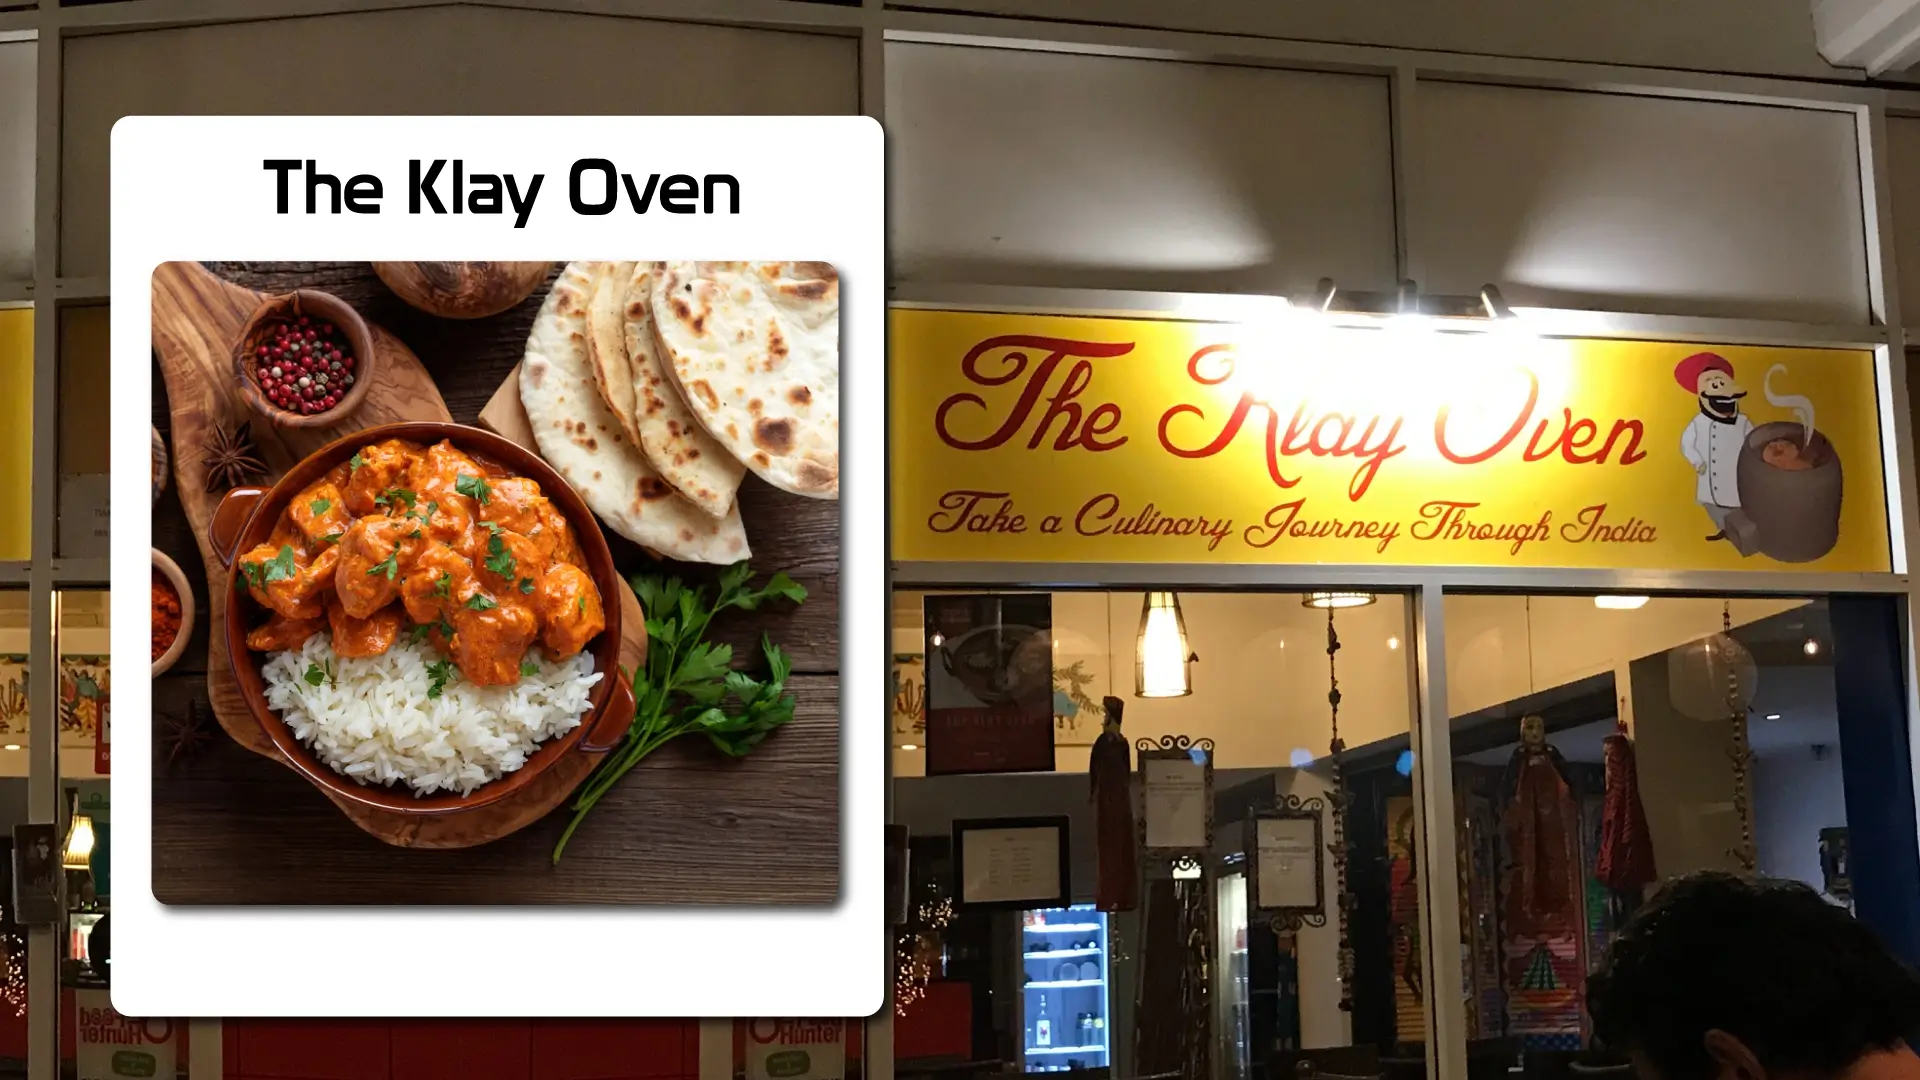 The Klay Oven Restaurant